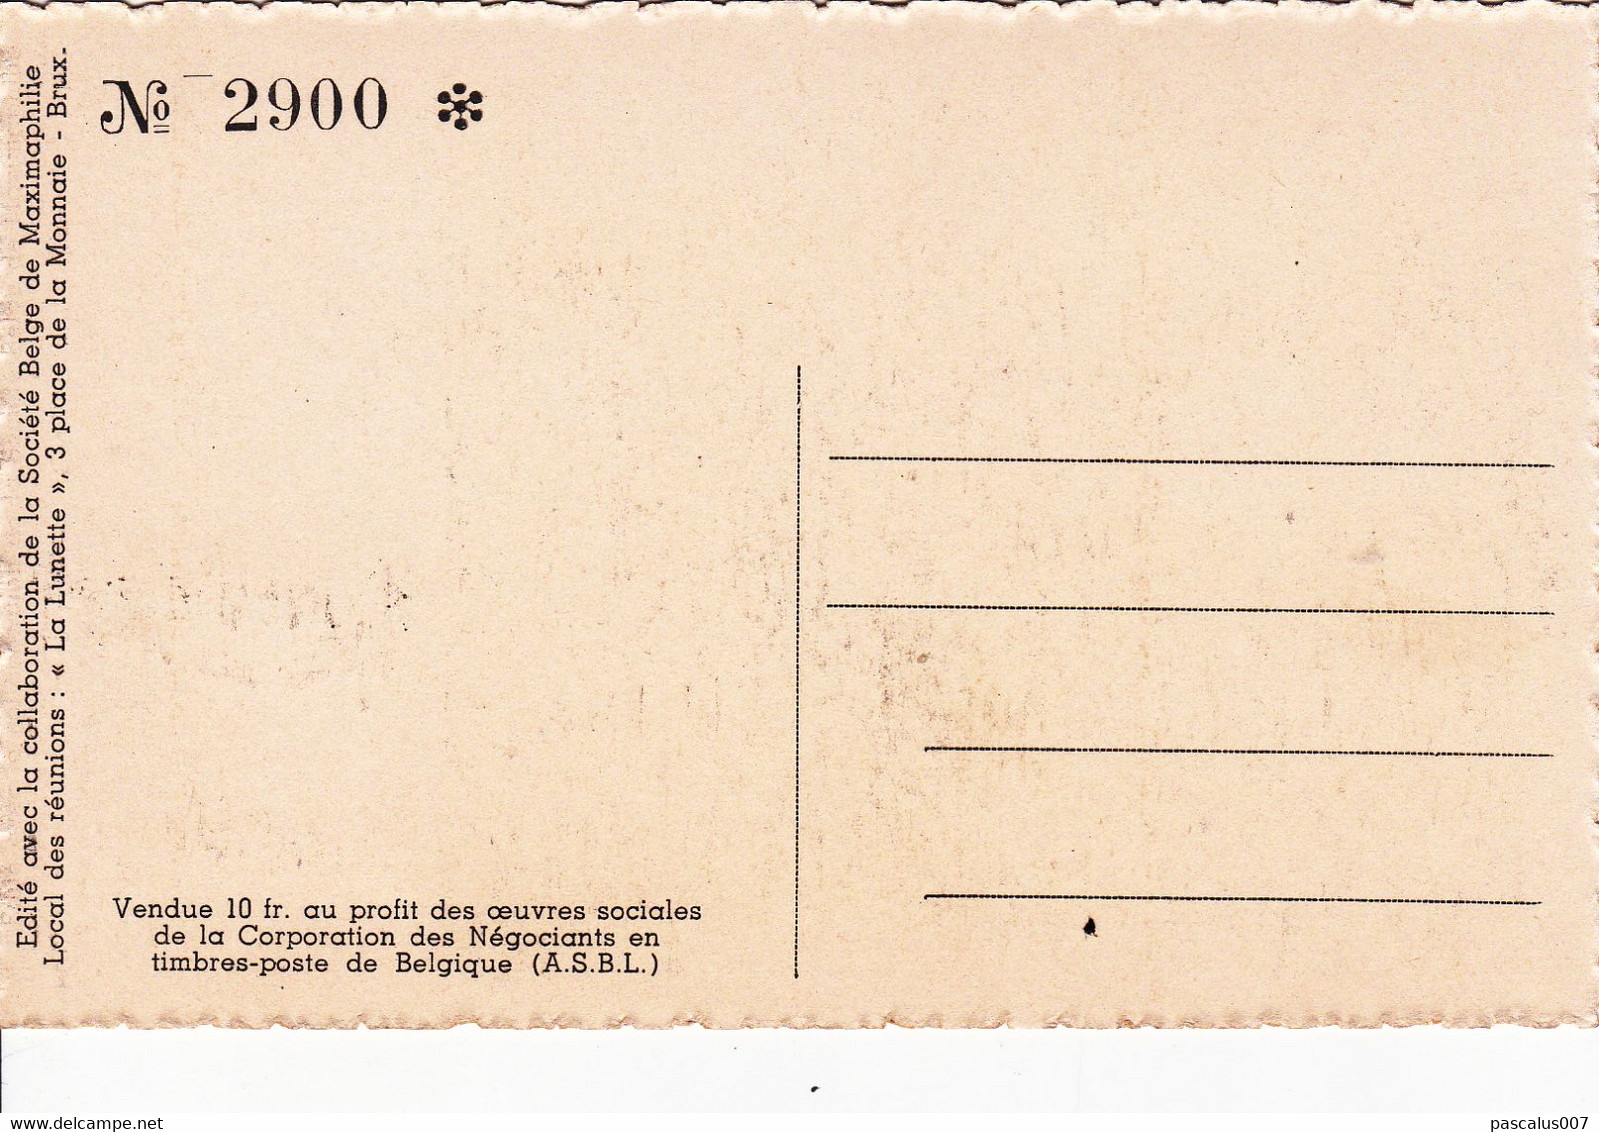 B01-189 - Carte Maximum Cob 807 - Roi Léopold Ier N°2900 -1-7-1949 Bruxelles Brussel 3.99€ - 1934-1951